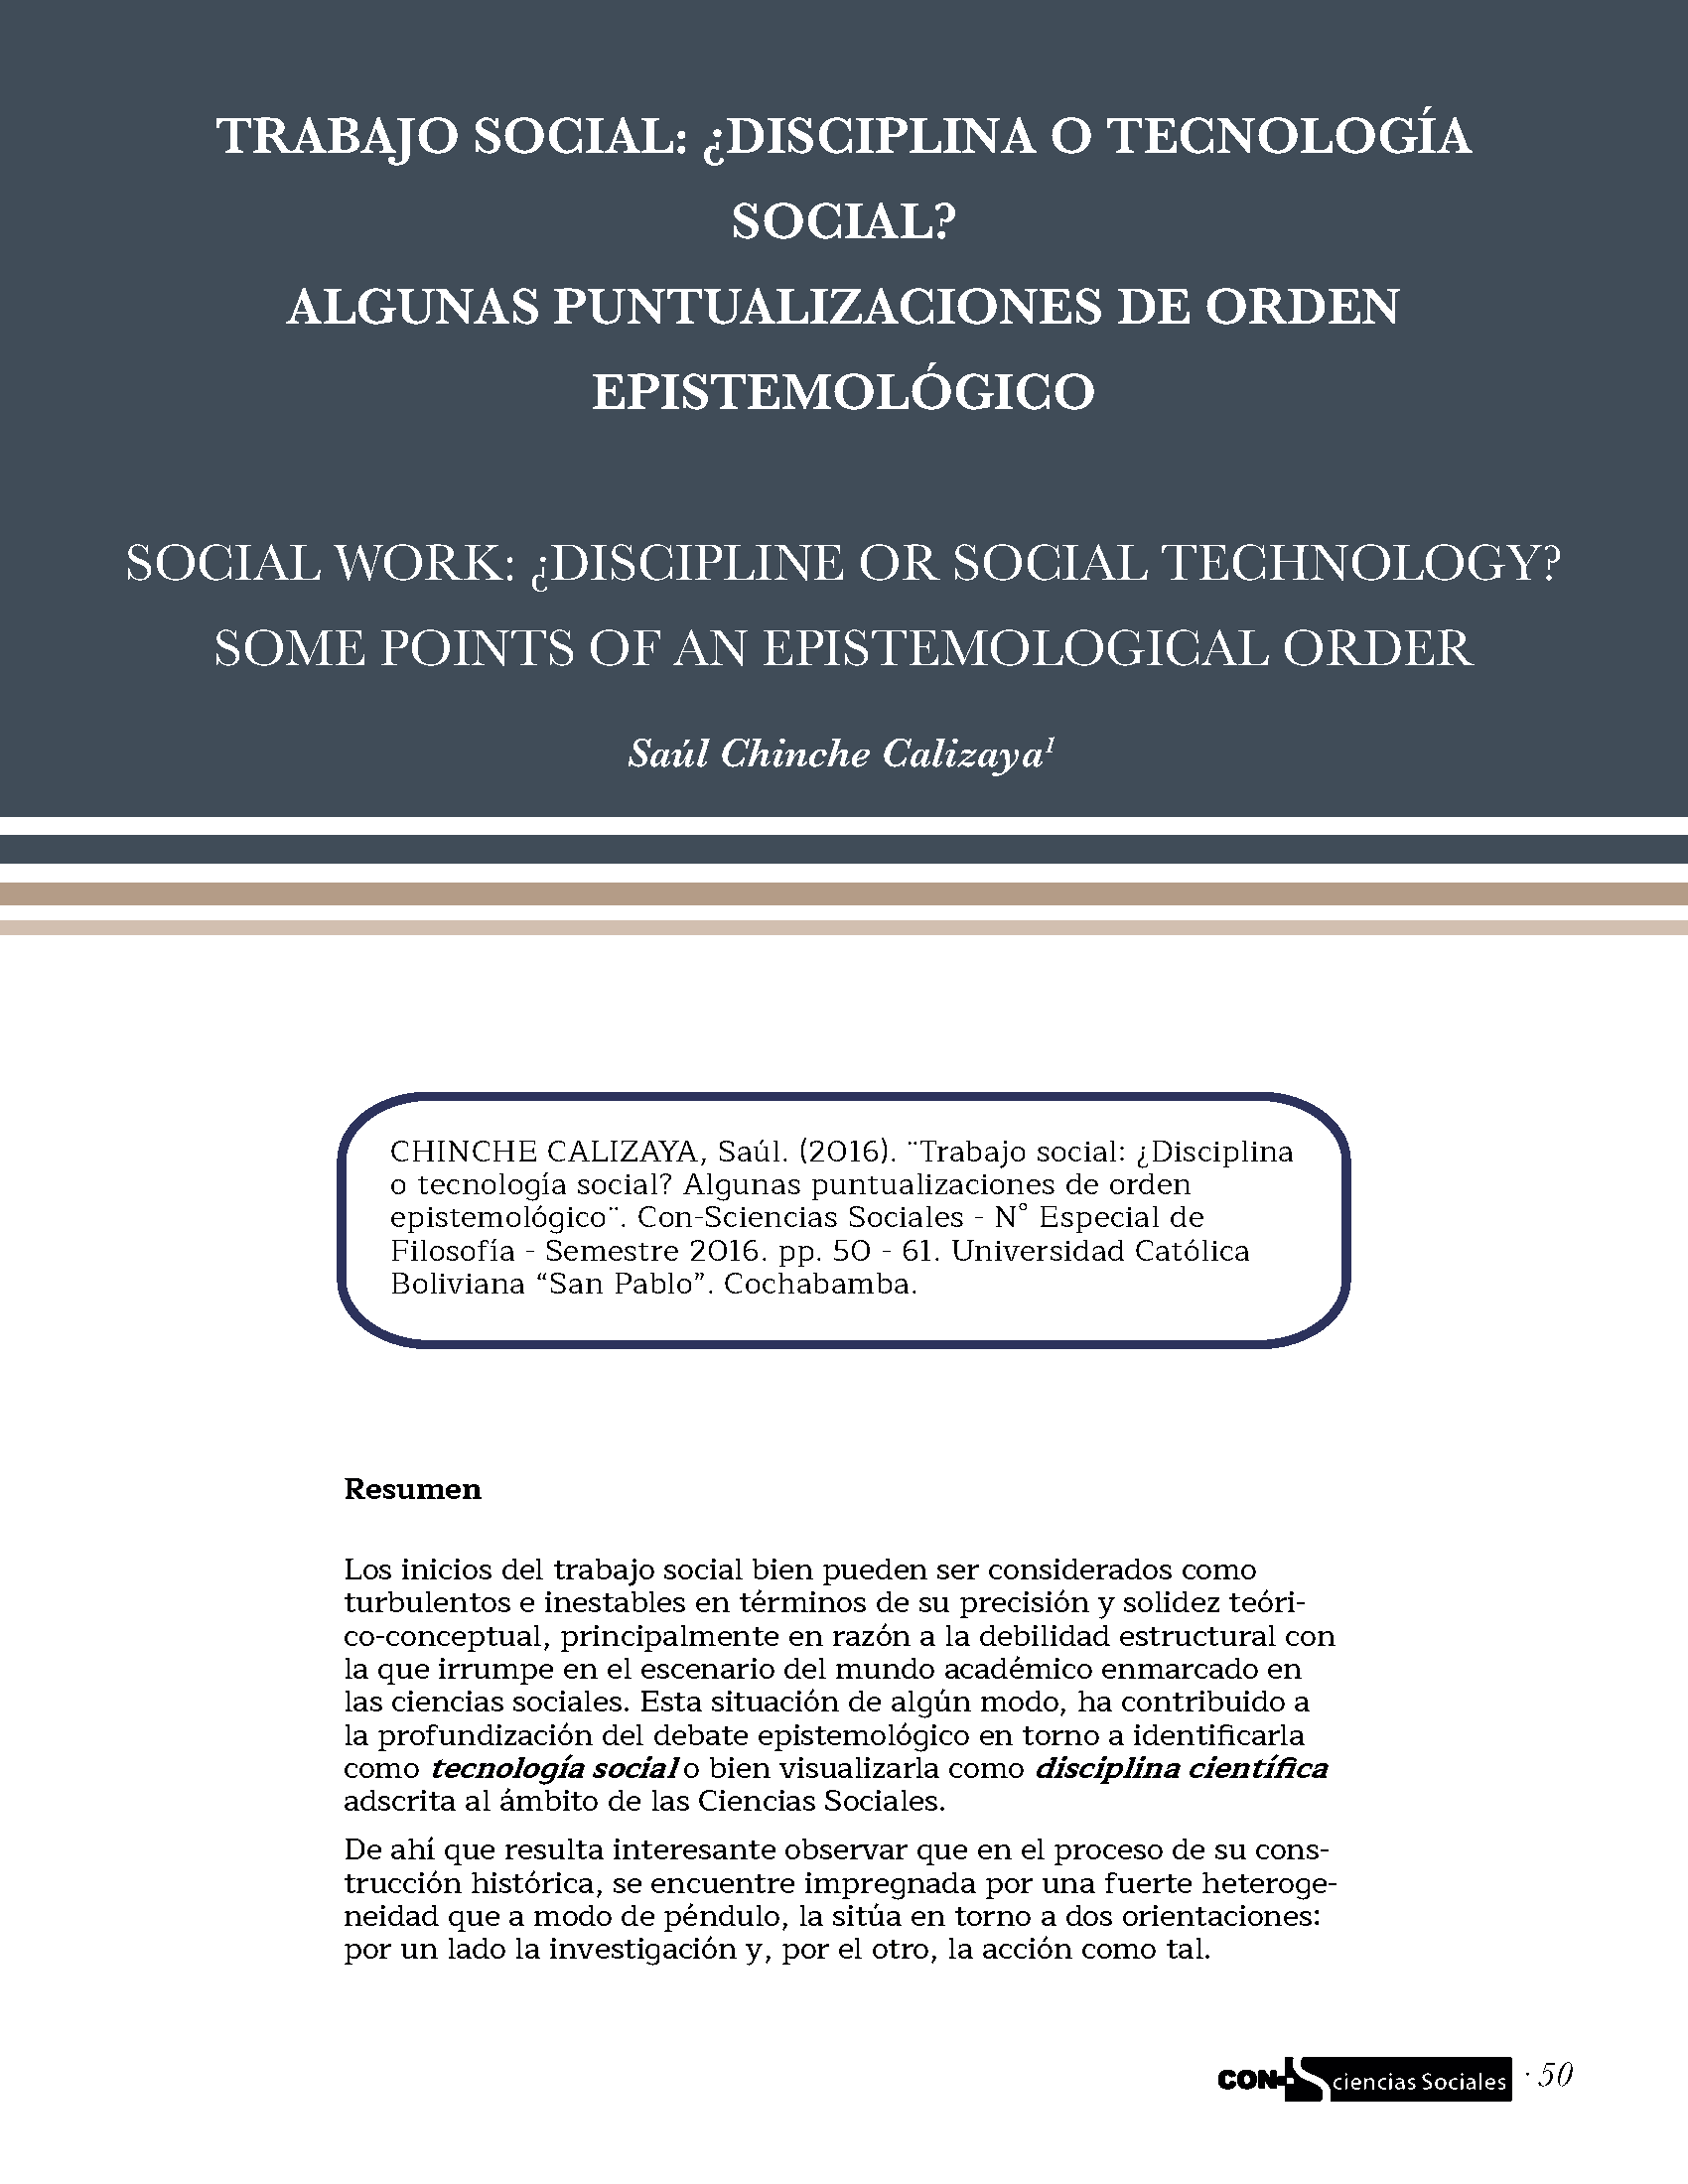 Trabajo social: ¿disciplina o tecnología social?. Algunas puntualizaciones de orden epistemológico